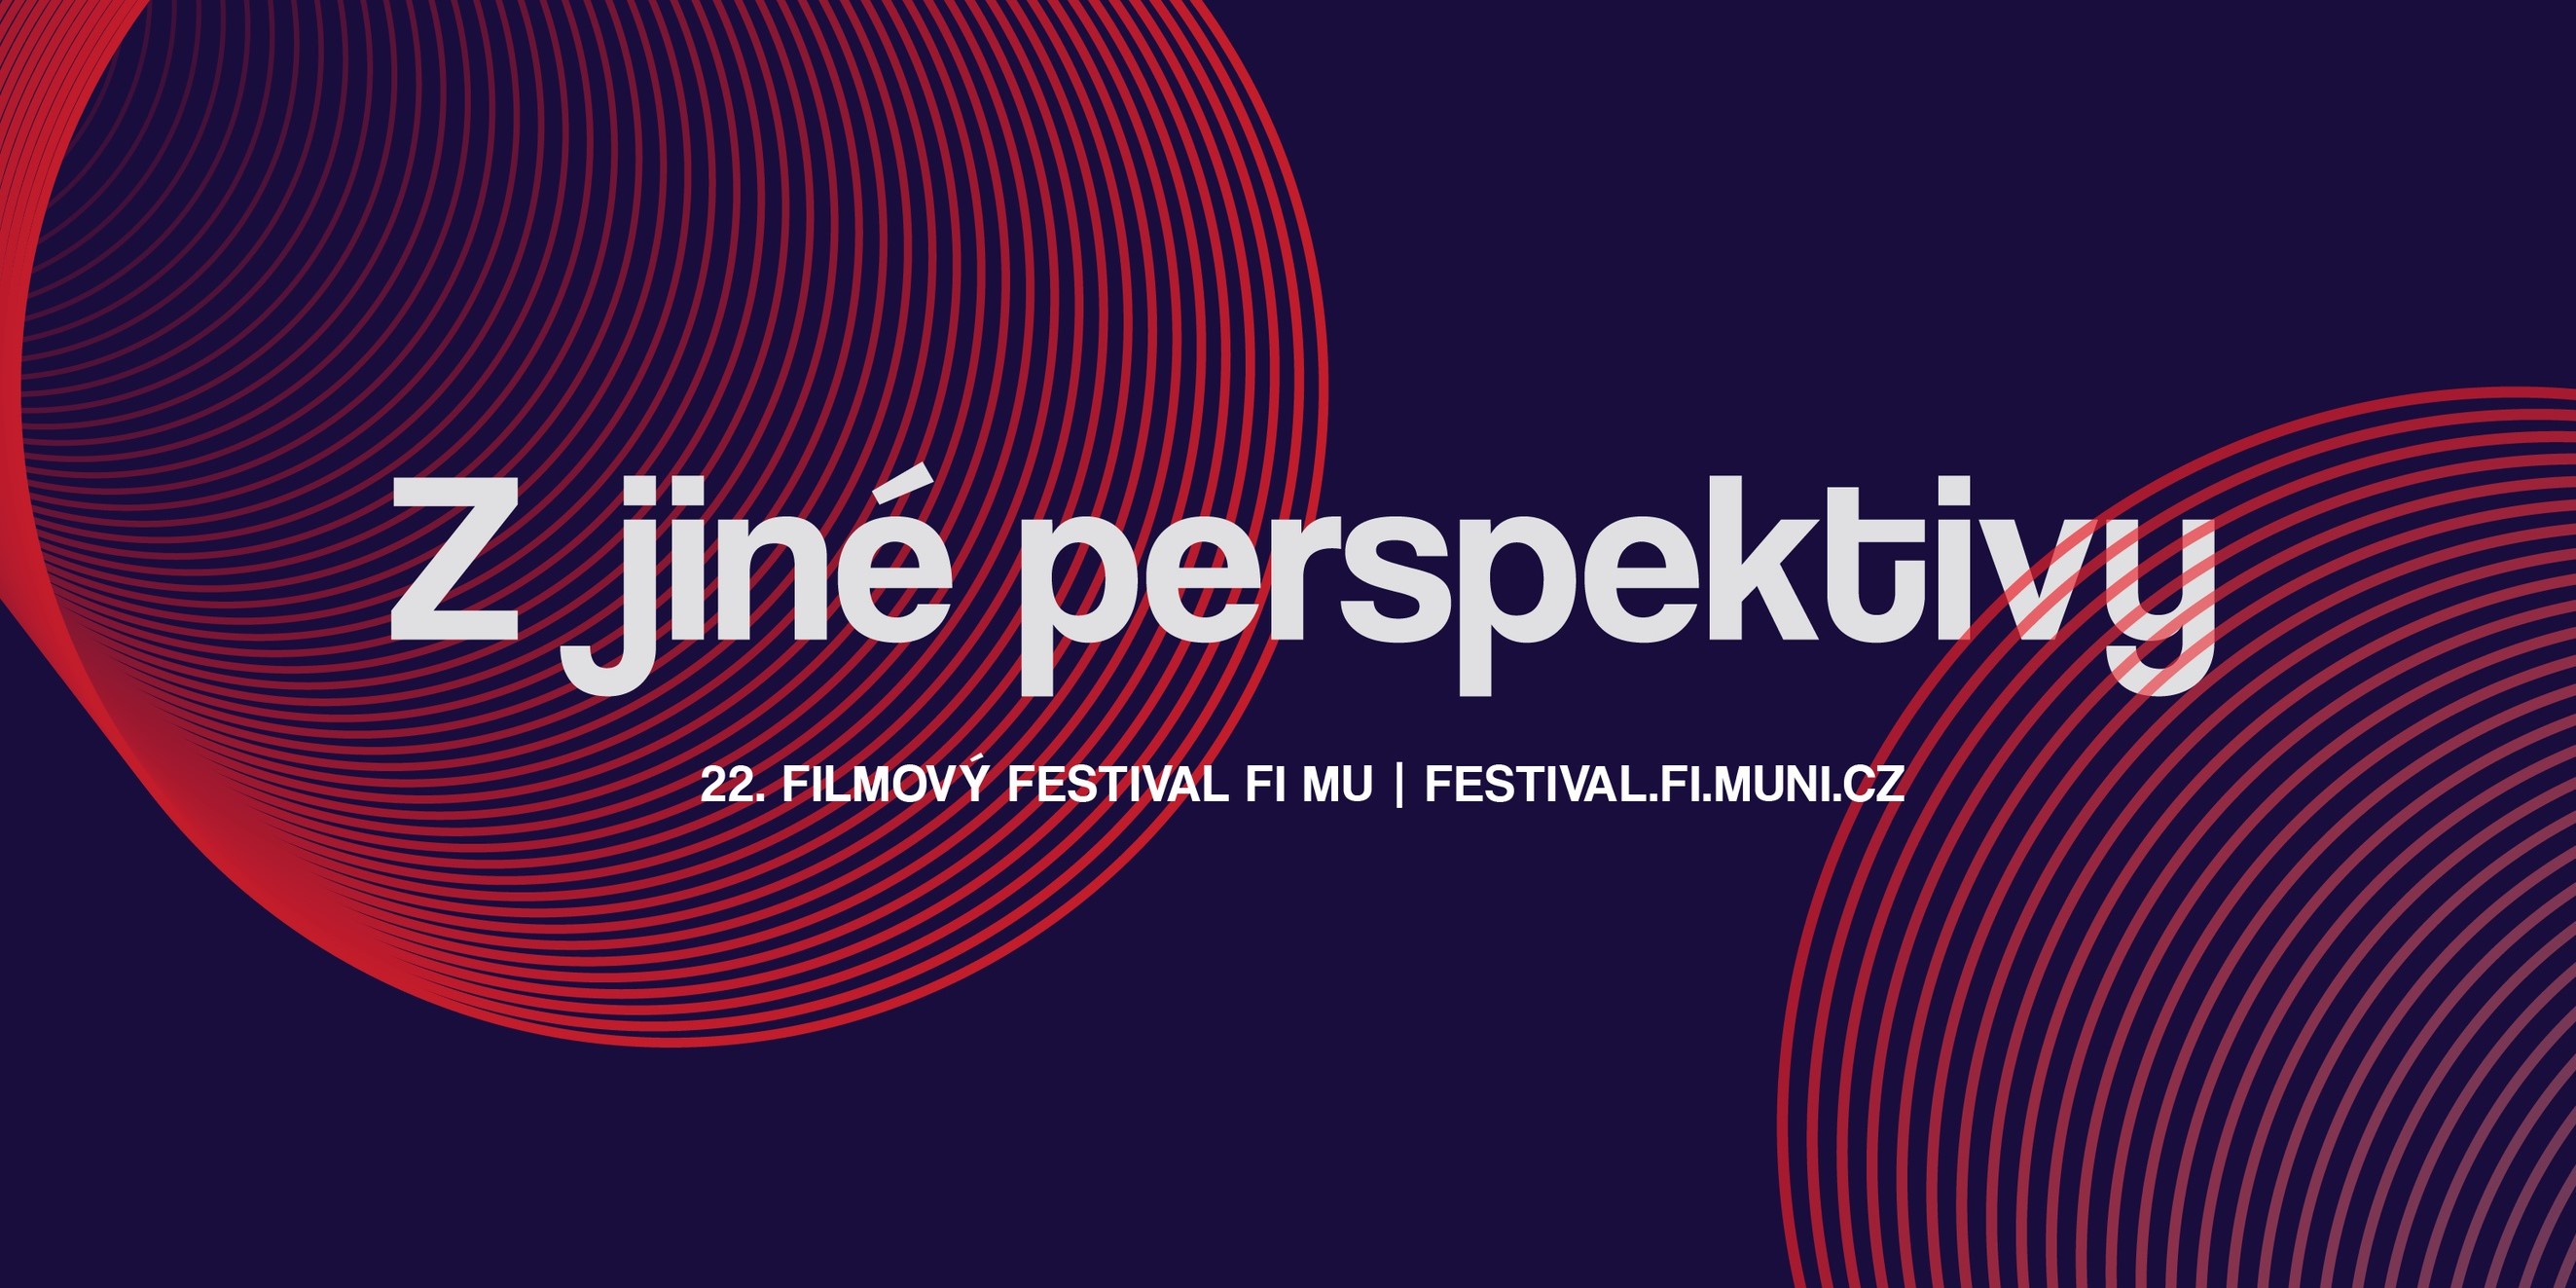 Začíná dvaadvacátý Filmový festival fakulty informatiky. Jak to vidíš ty?